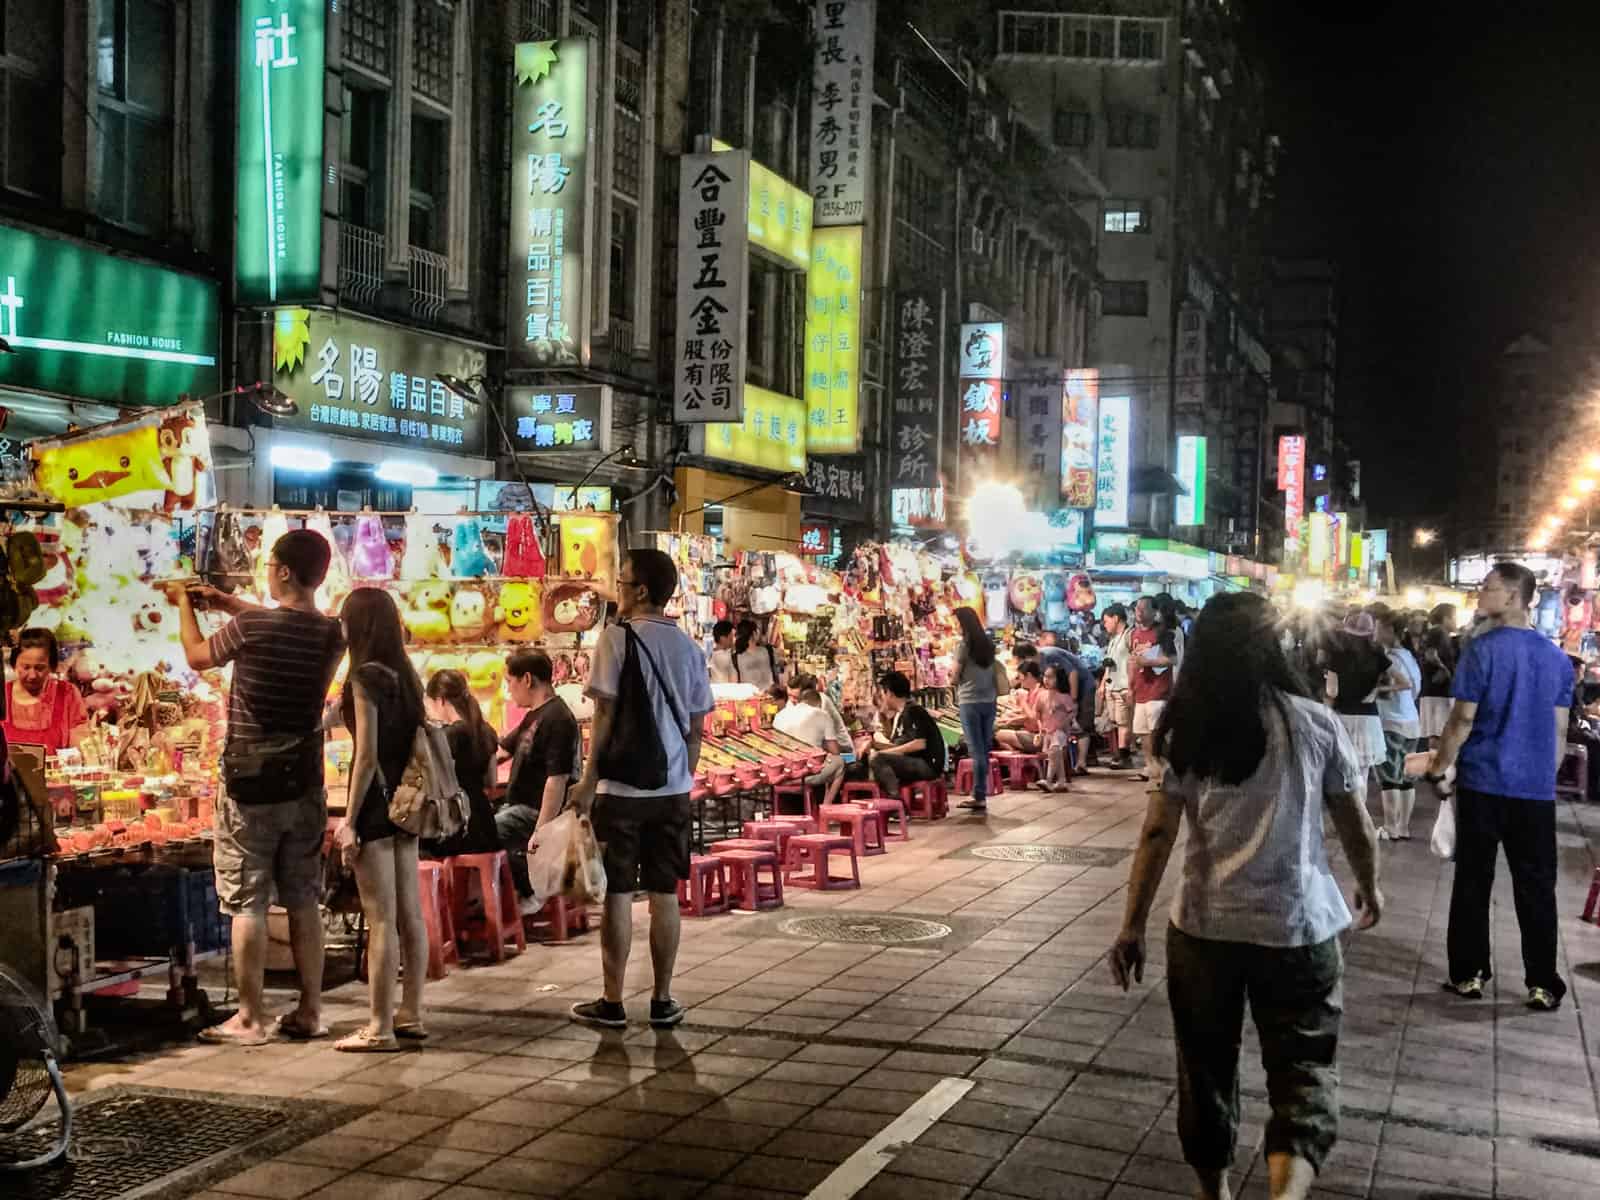 Ningxia Night Market in Taipei